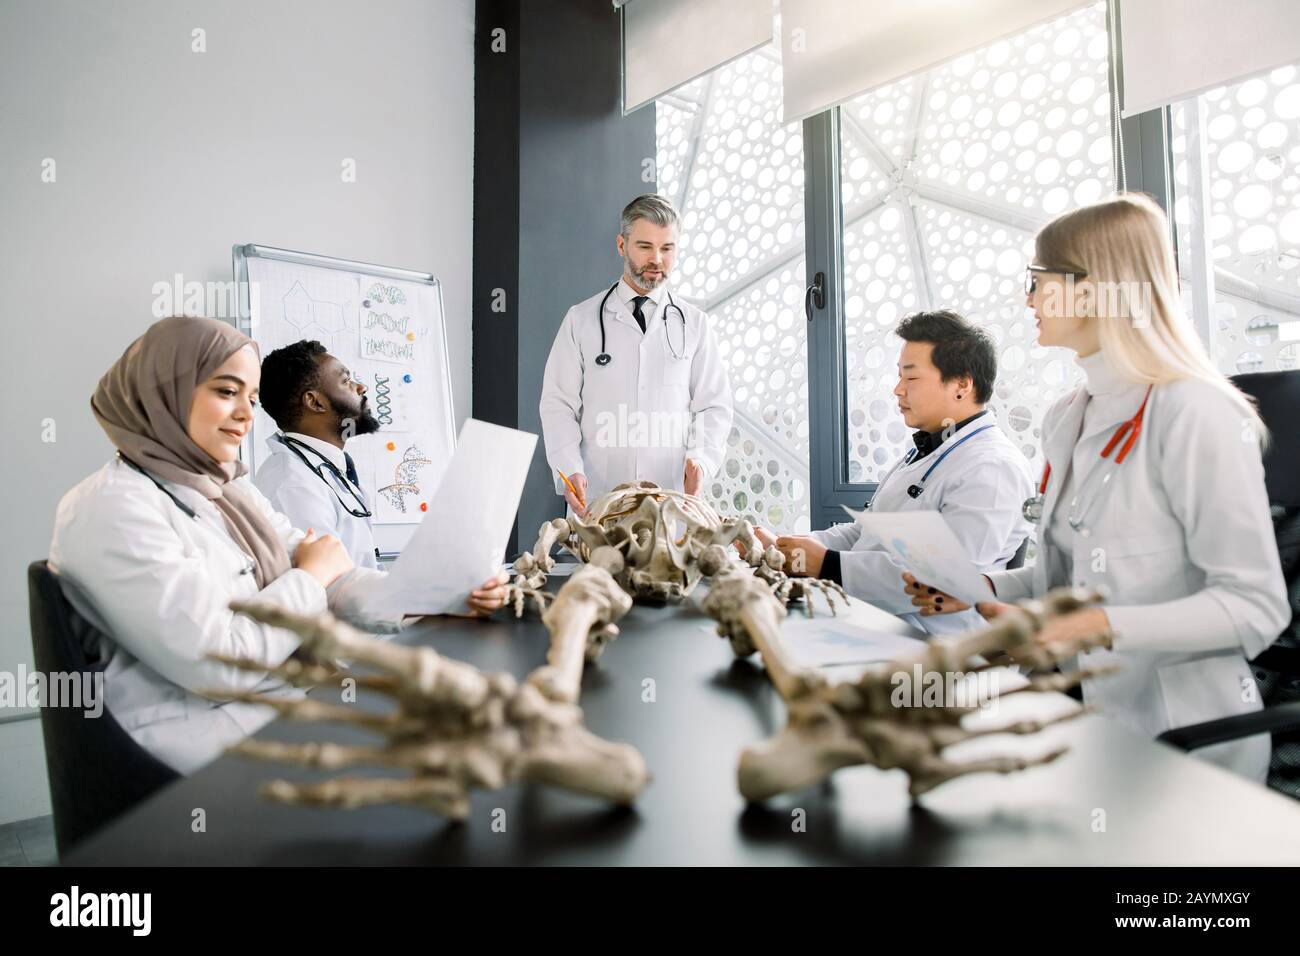 Beau médecin d'âge moyen, professeur d'anatomie, expliquant l'anatomie des os en utilisant le modèle de squelette pour divers élèves en couches blanches. Médecine, éducation Banque D'Images